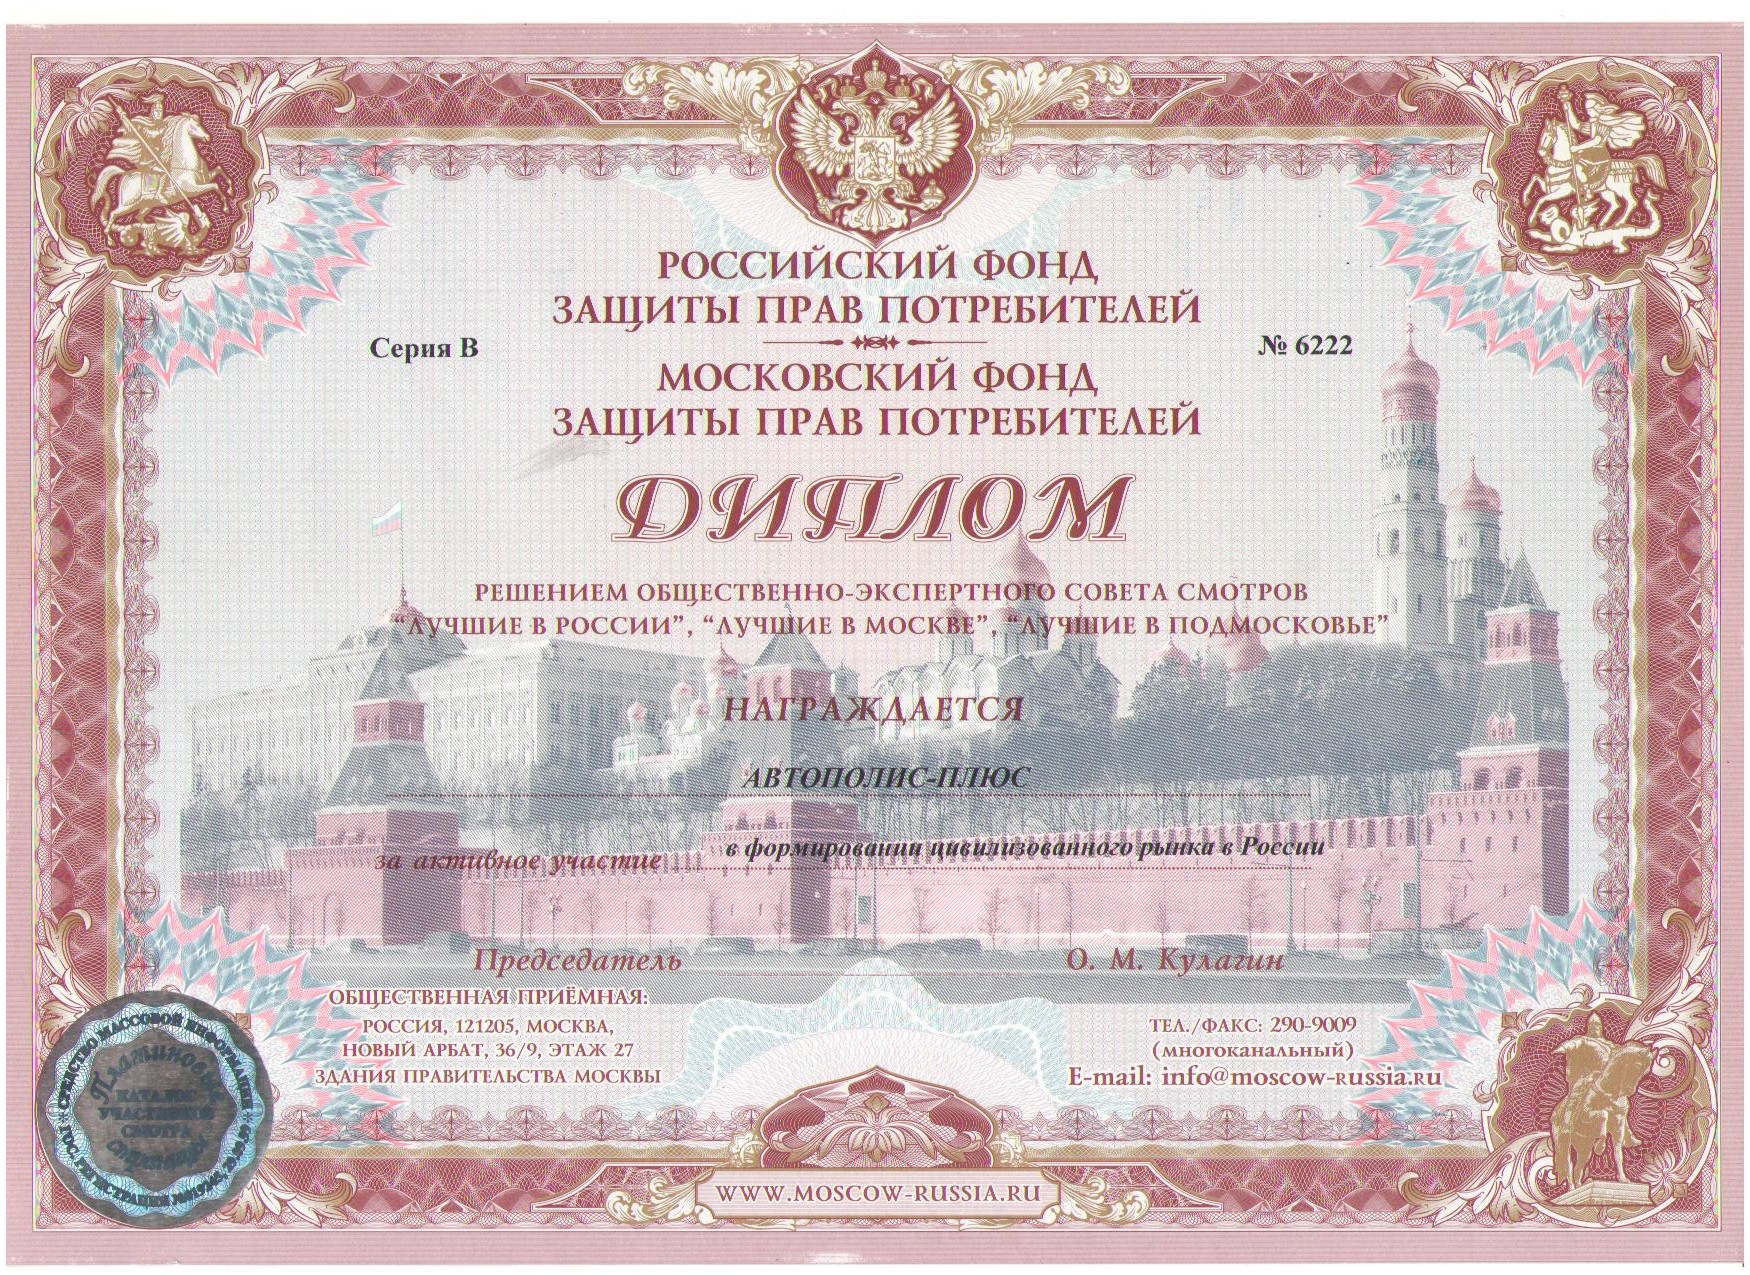 Диплом московского Фонда защиты прав потребителей